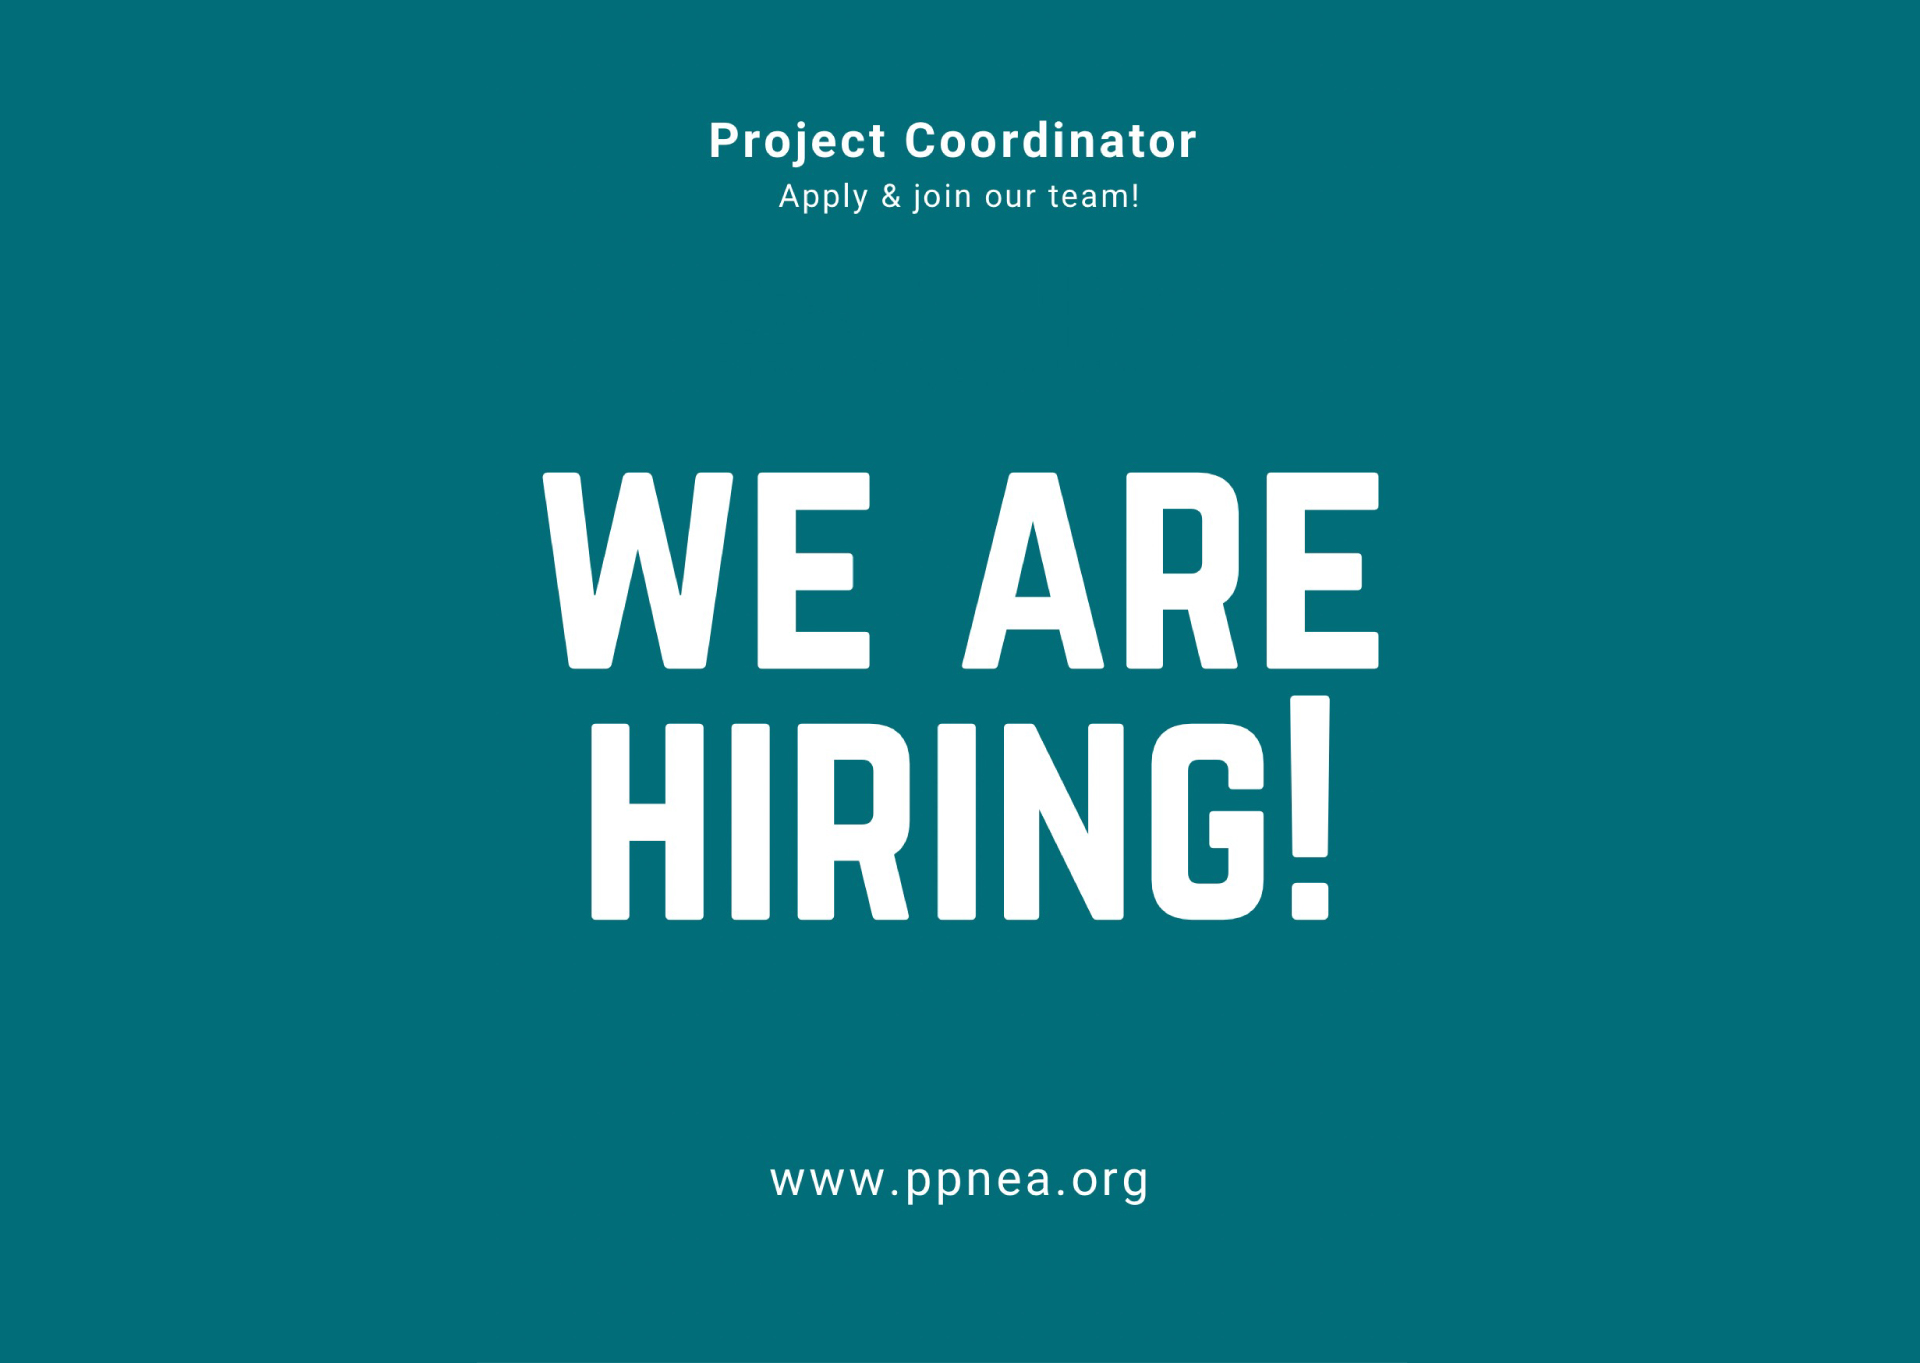 PPNEA kërkon të punësojë një Koordinator Projekti.